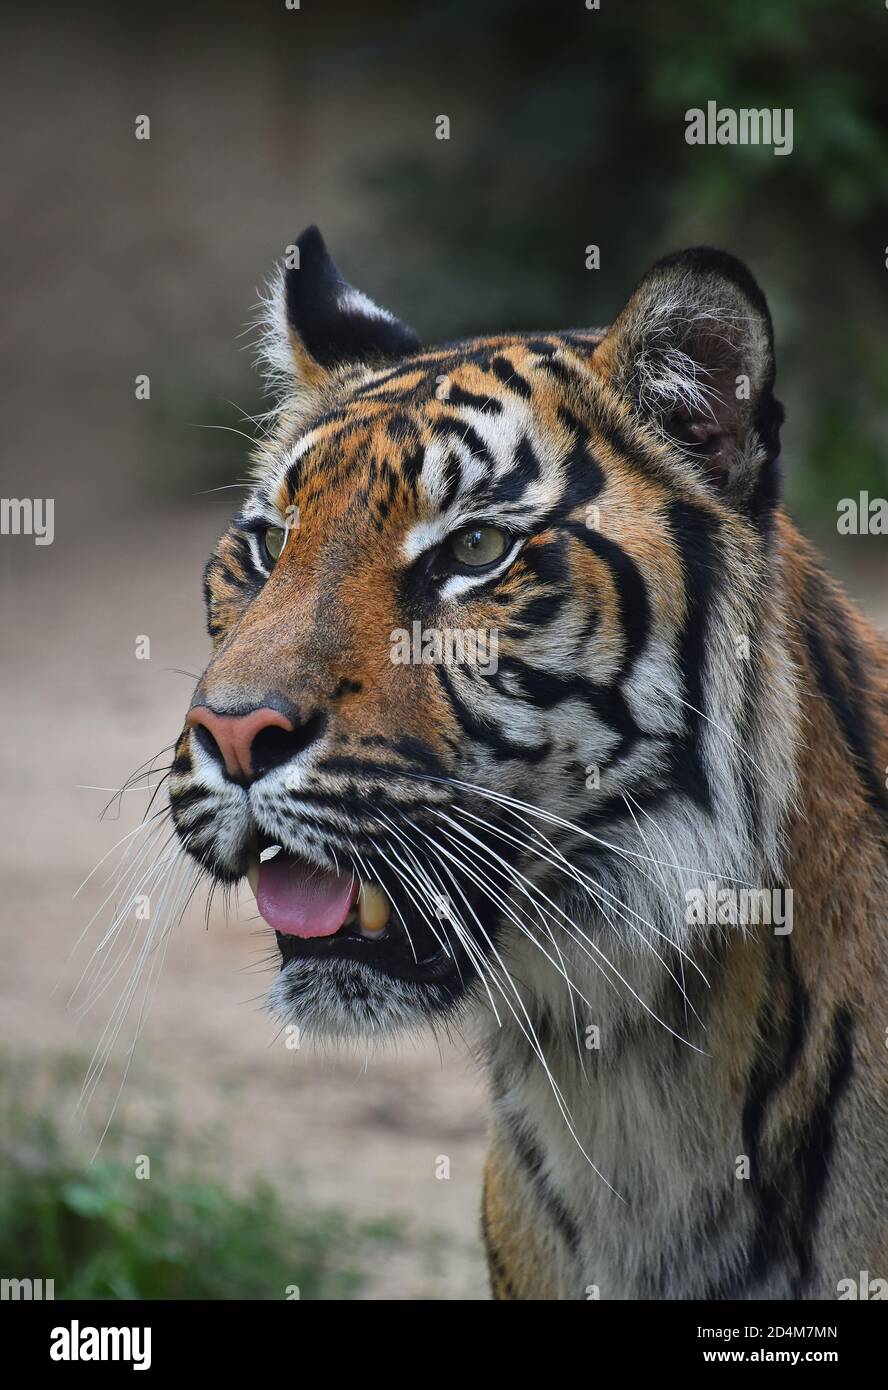 Gros plan d'un jeune tigre de Sumatran (Panthera tigris sondaica) regardant la caméra alertée avec la bouche ouverte, vue en grand angle Banque D'Images